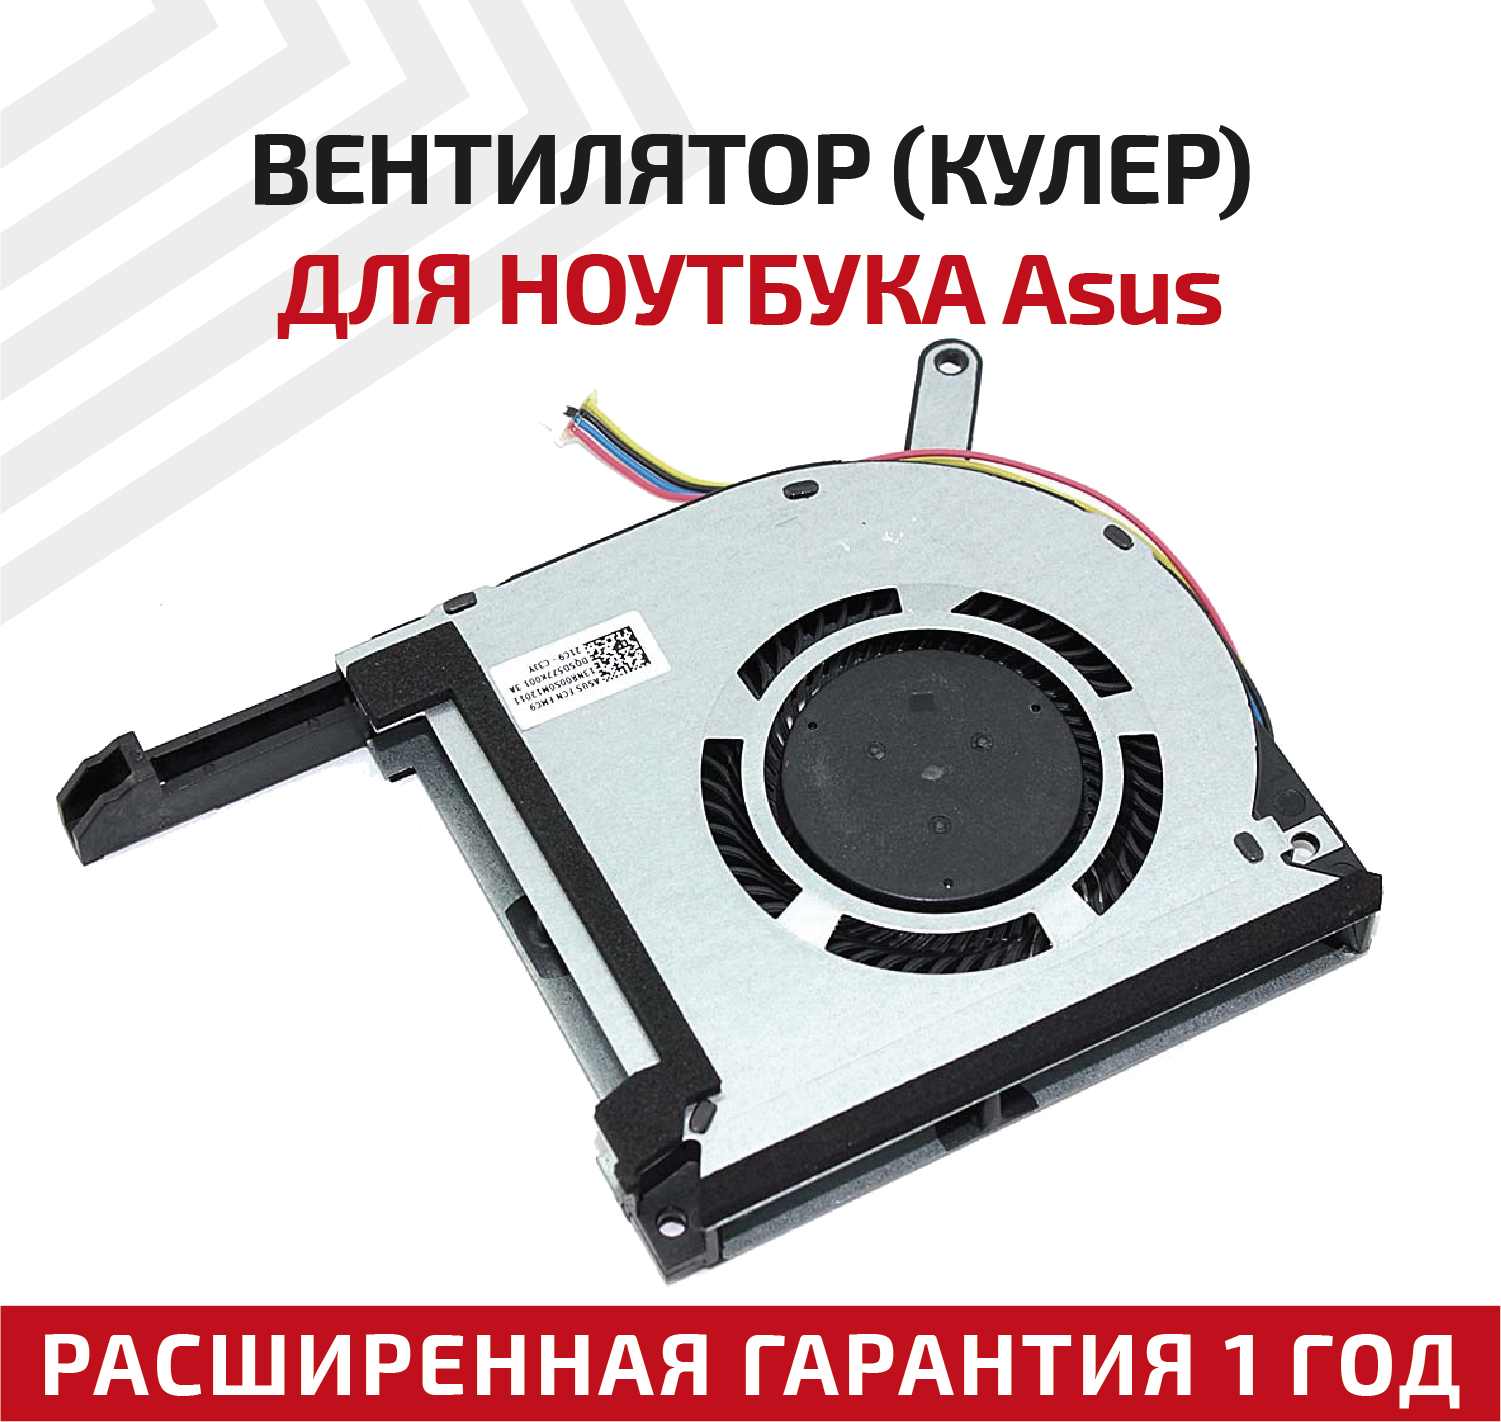 Вентилятор (кулер) для ноутбука Asus FX505, FX705, GPU